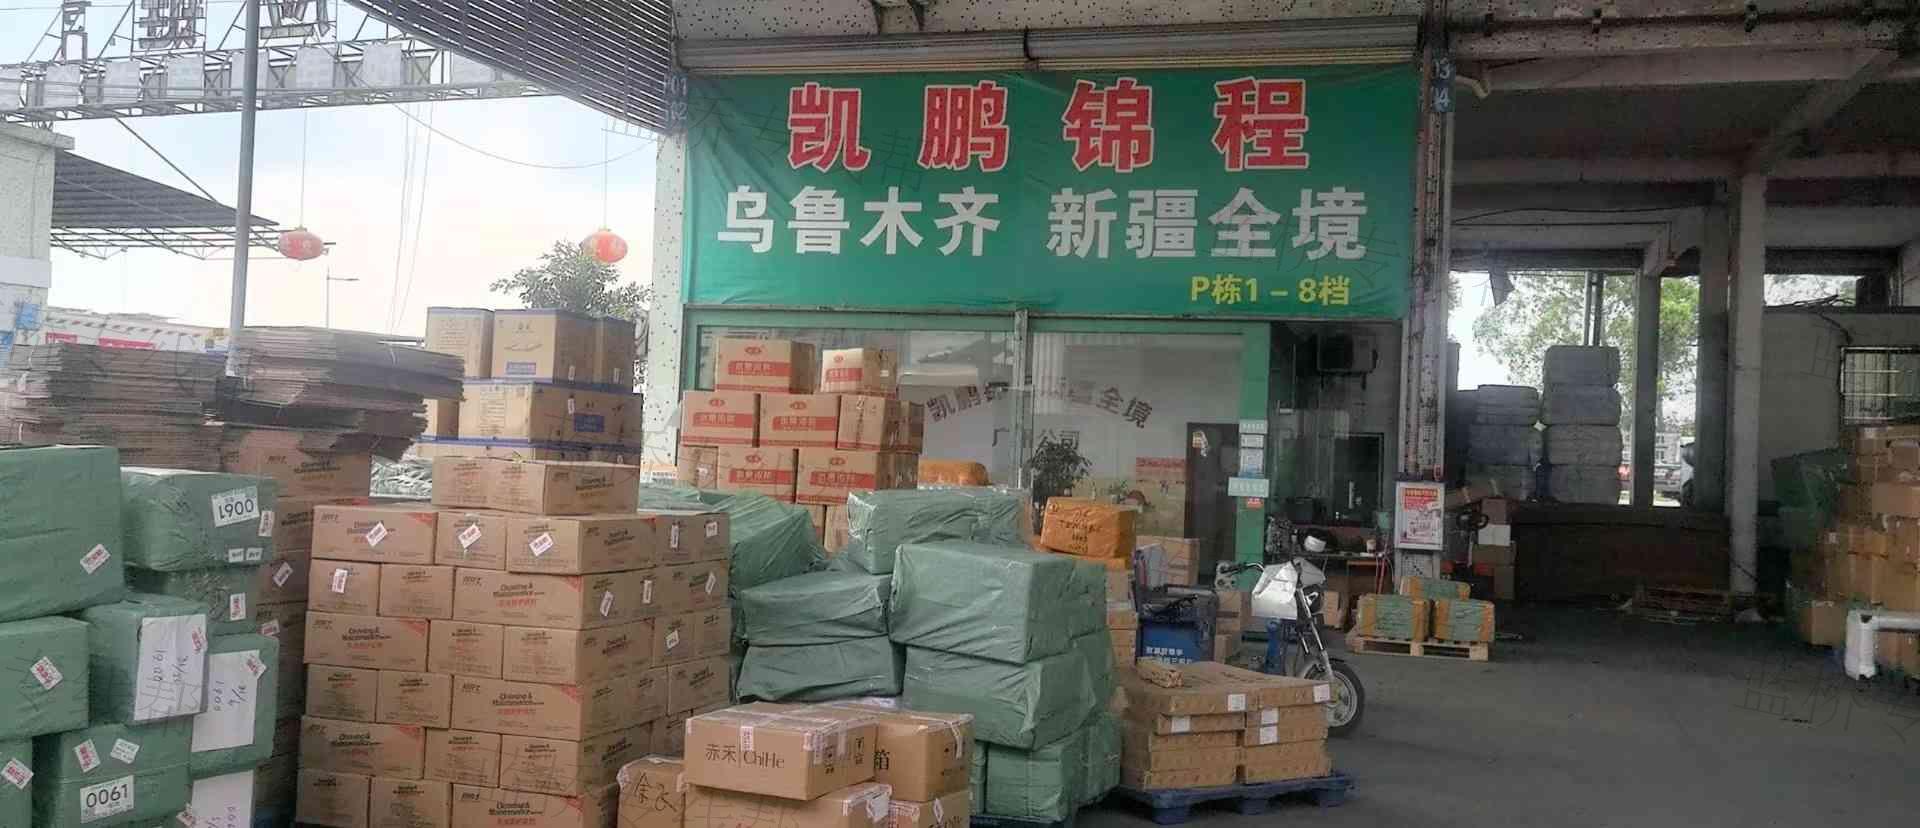 广州凯鹏速运物流有限公司